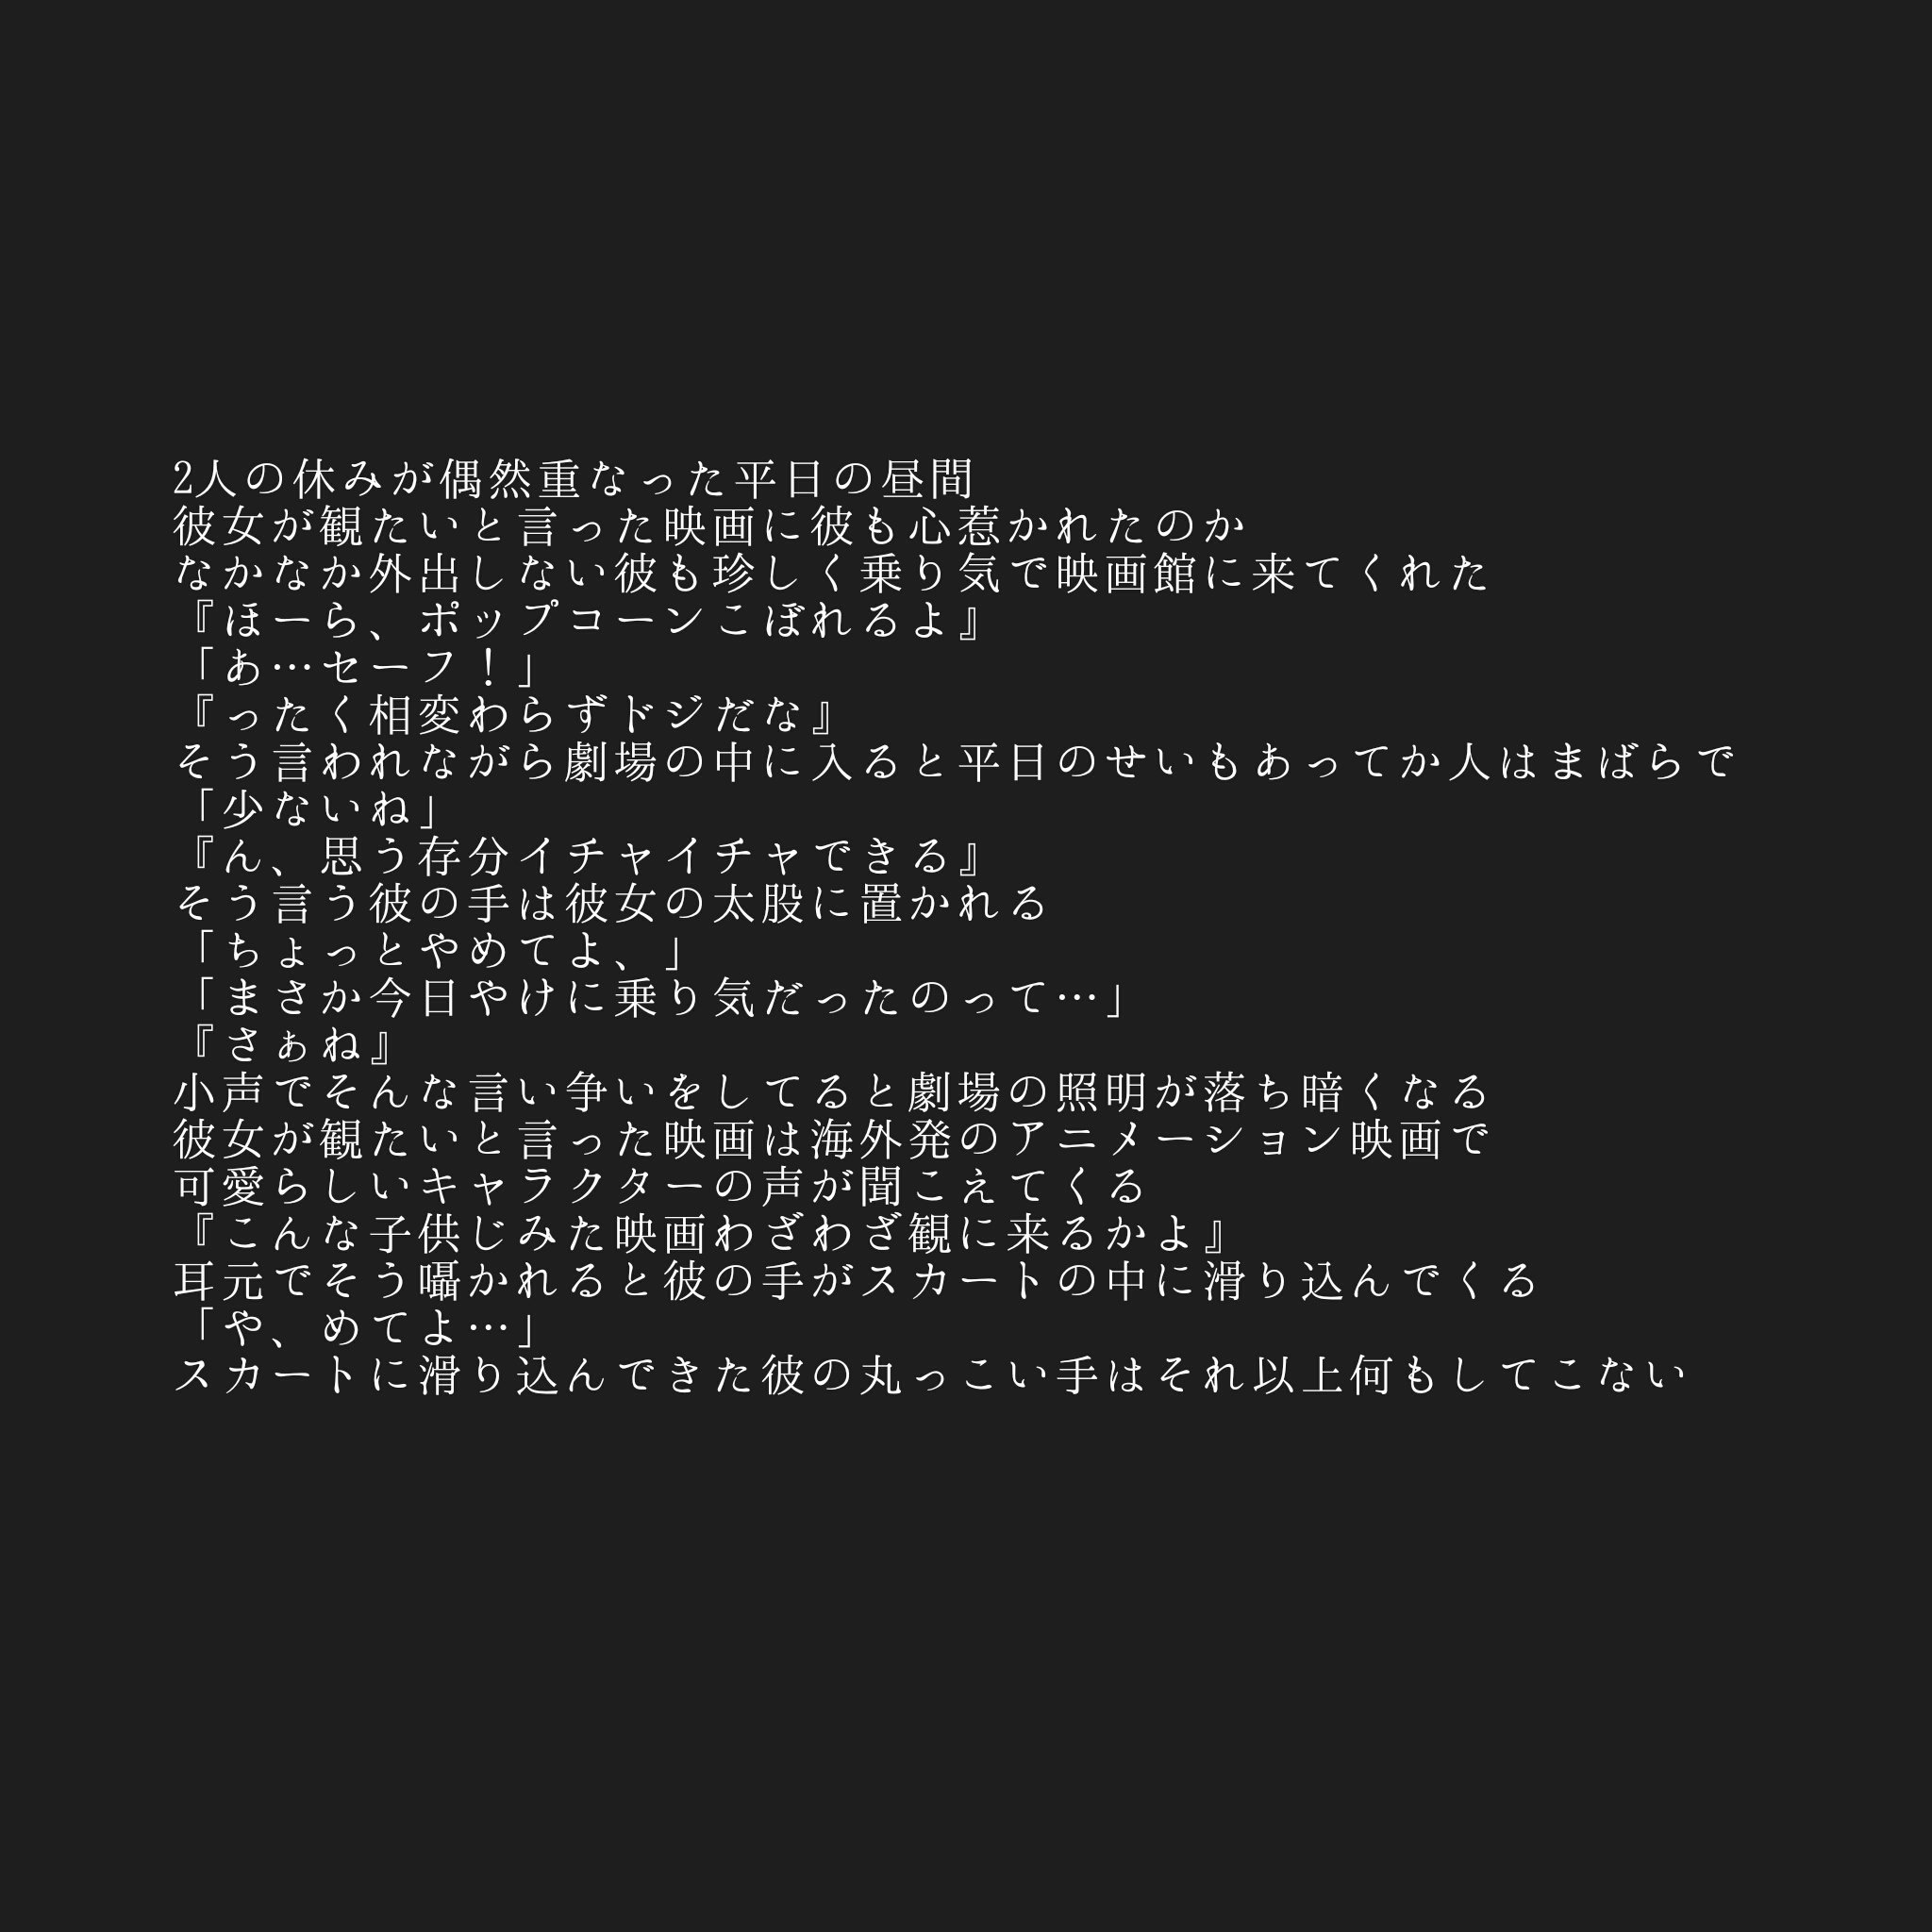 パピコ 映画館 Papico Story 嵐妄想ピンク T Co C63aymtk8b Twitter